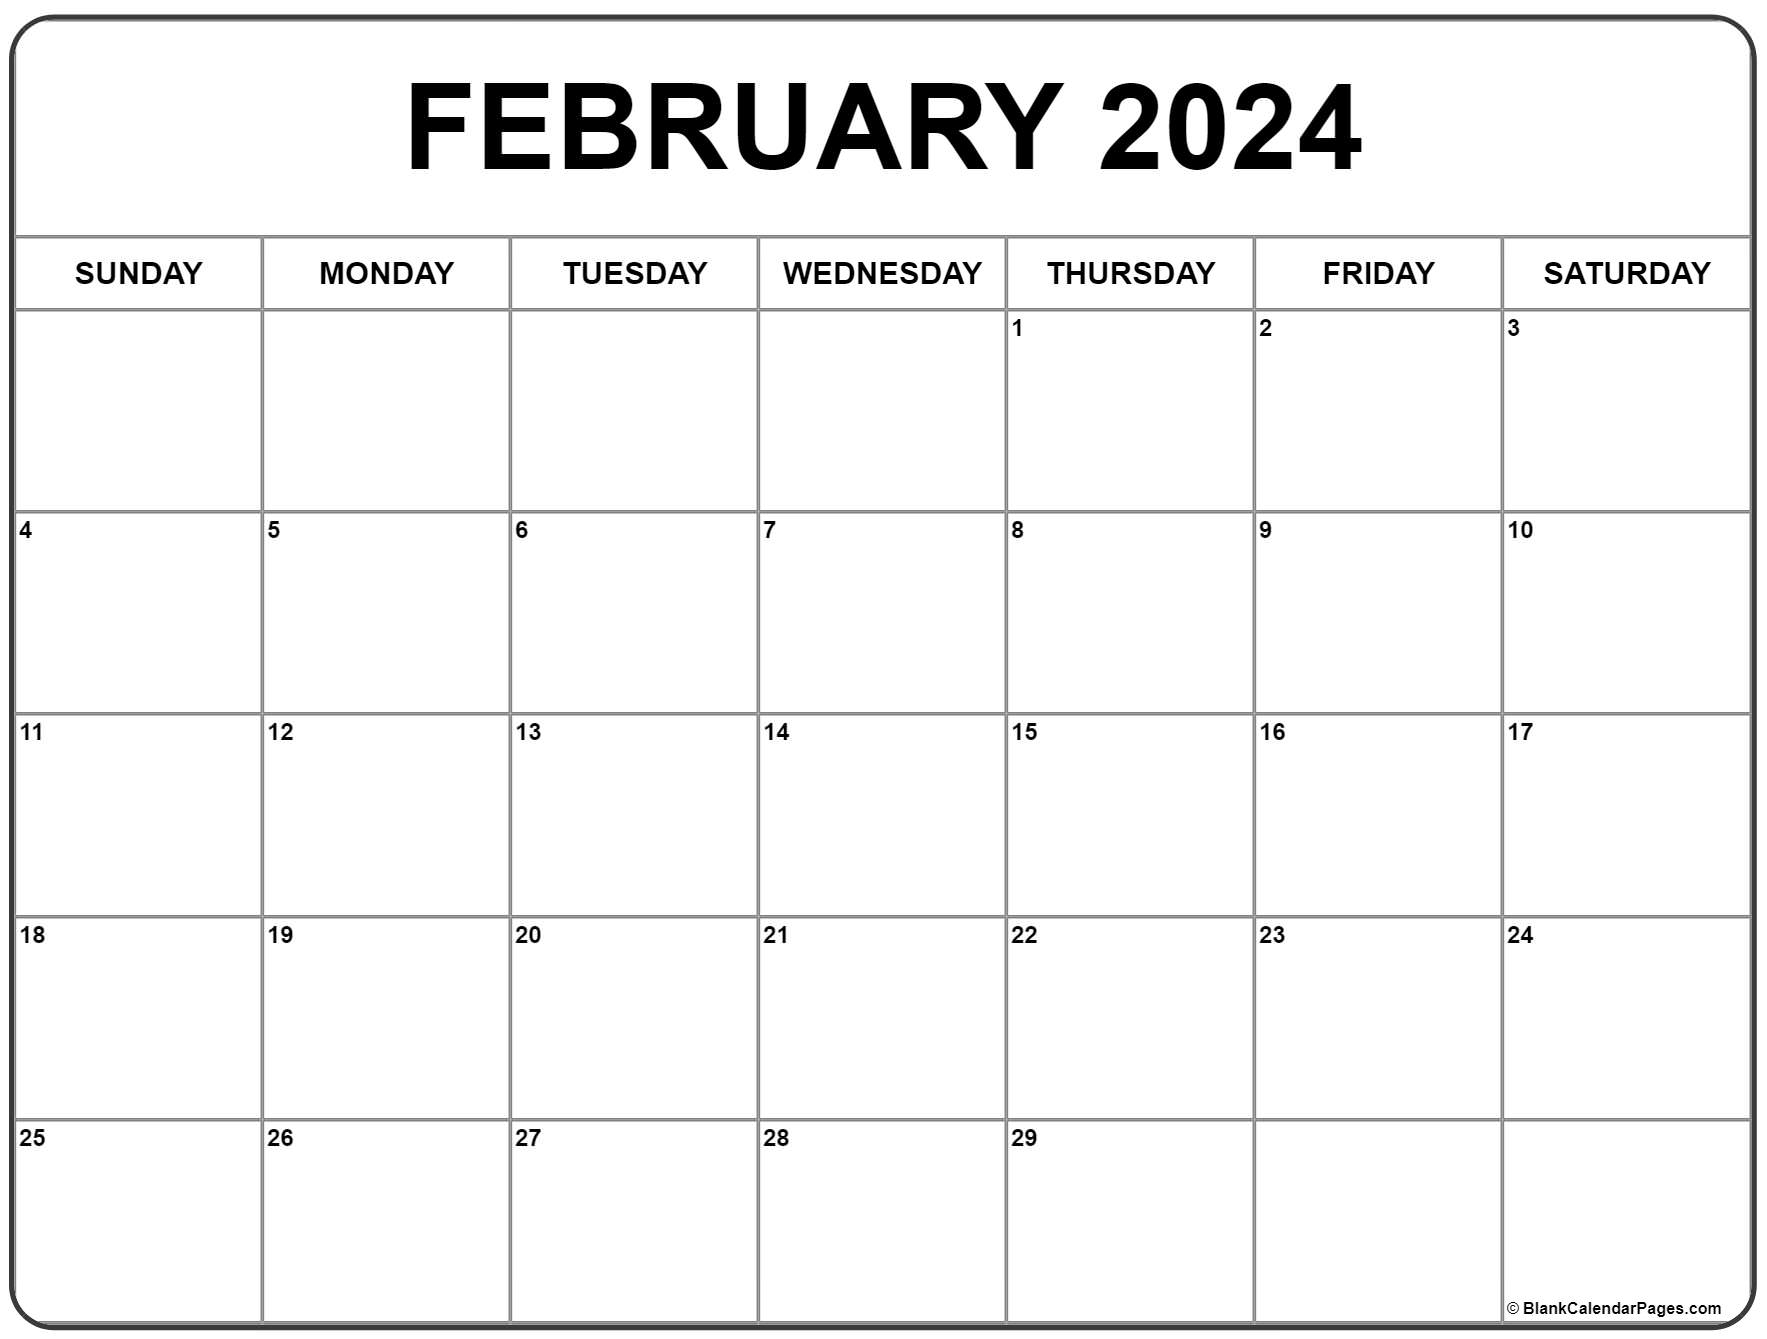 February 2024 Calendar | Free Printable Calendar for Free February Calendar 2024 Printable